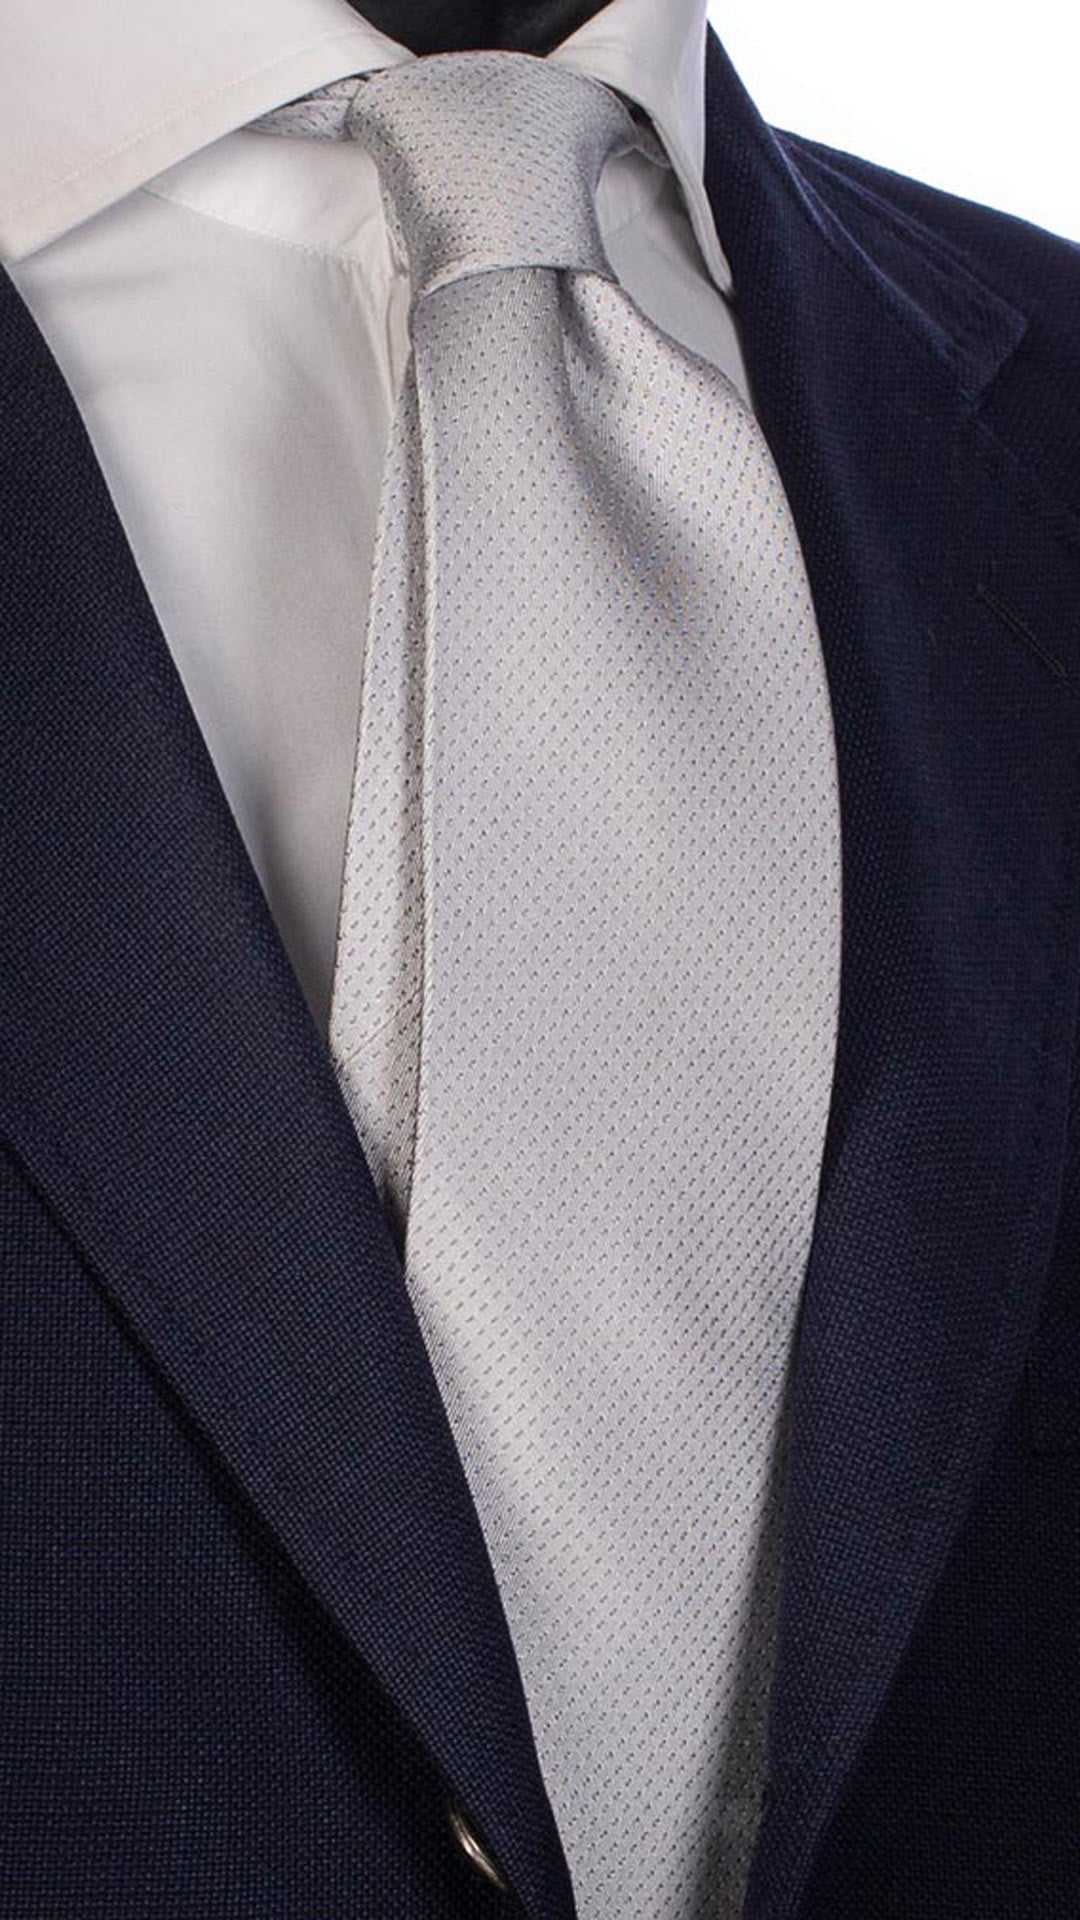 Cravatta da Cerimonia di Seta Grigio Chiaro Fantasia Tono su Tono CY2561 Made in Italy Graffeo Cravatte